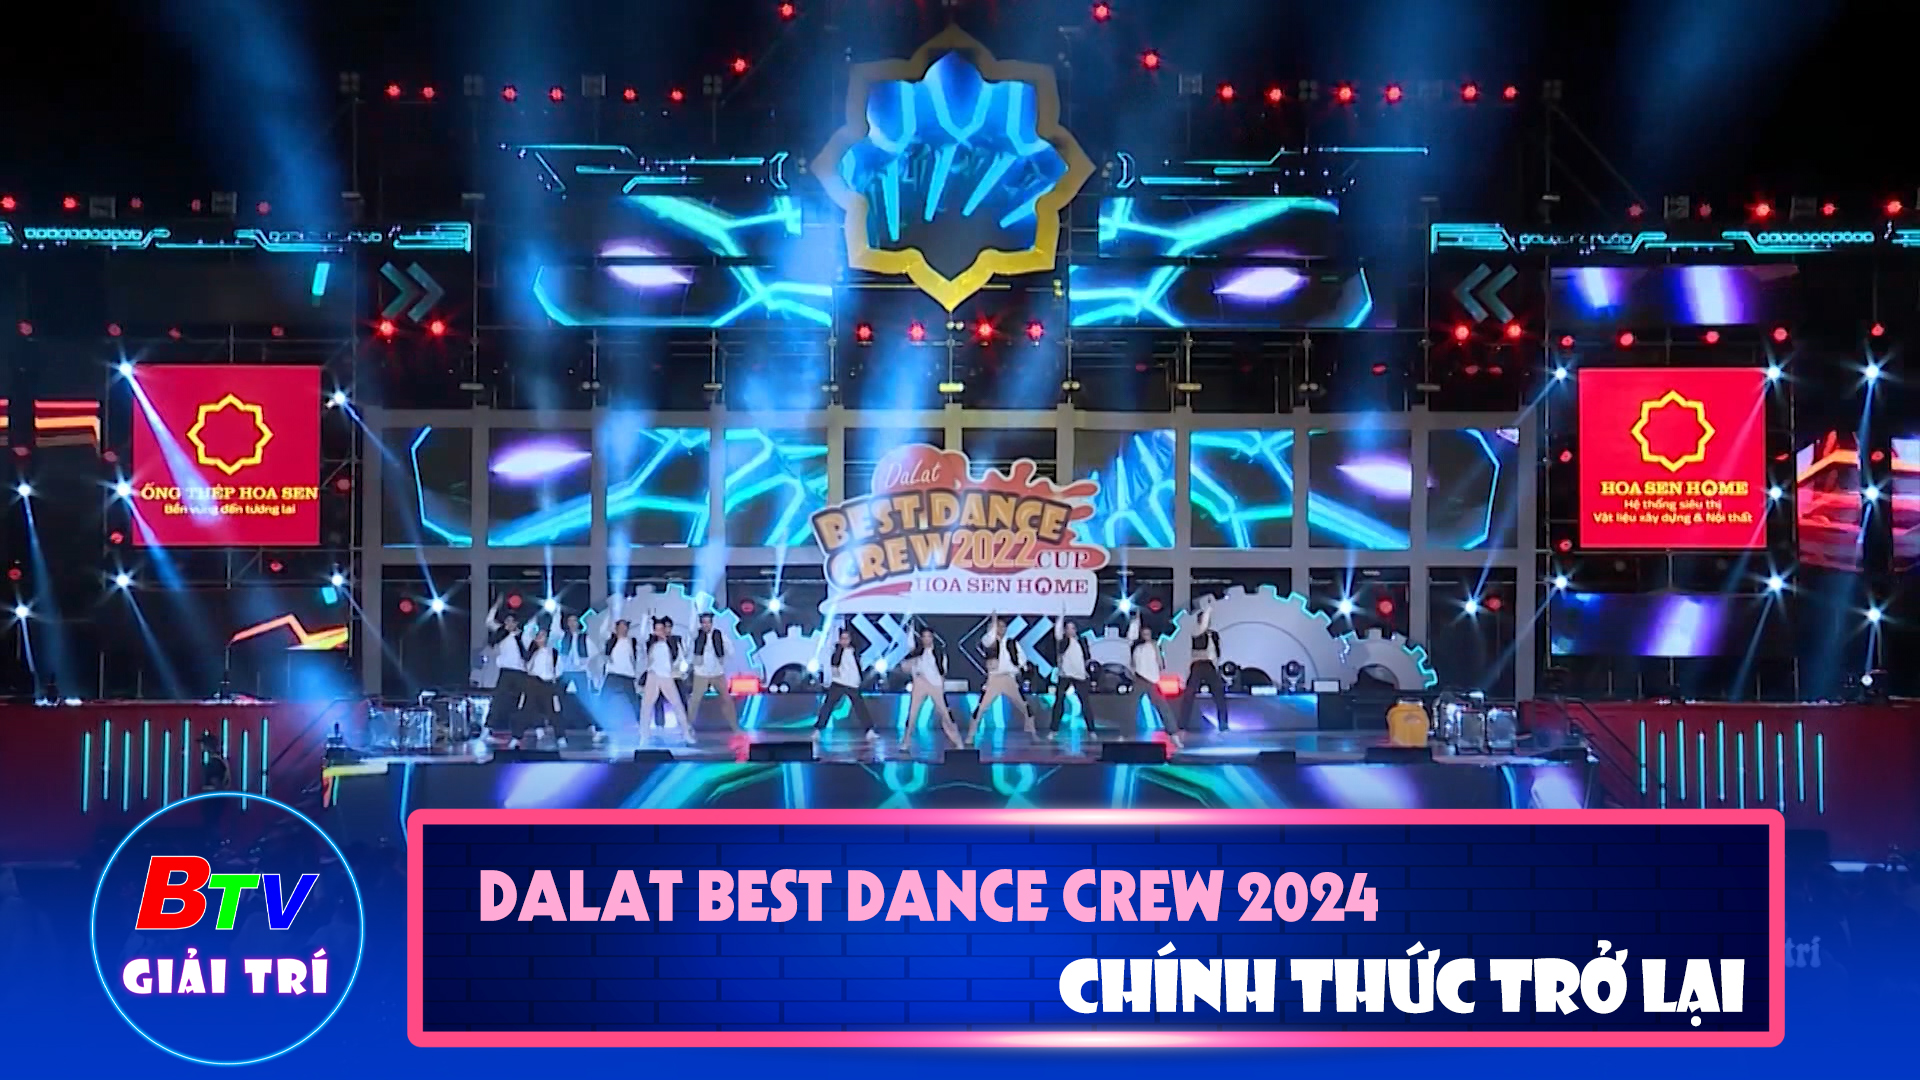 Dalat best dance crew 2024 - Hoa Sen home International cup chính thức trở lại | Điểm hẹn giải trí